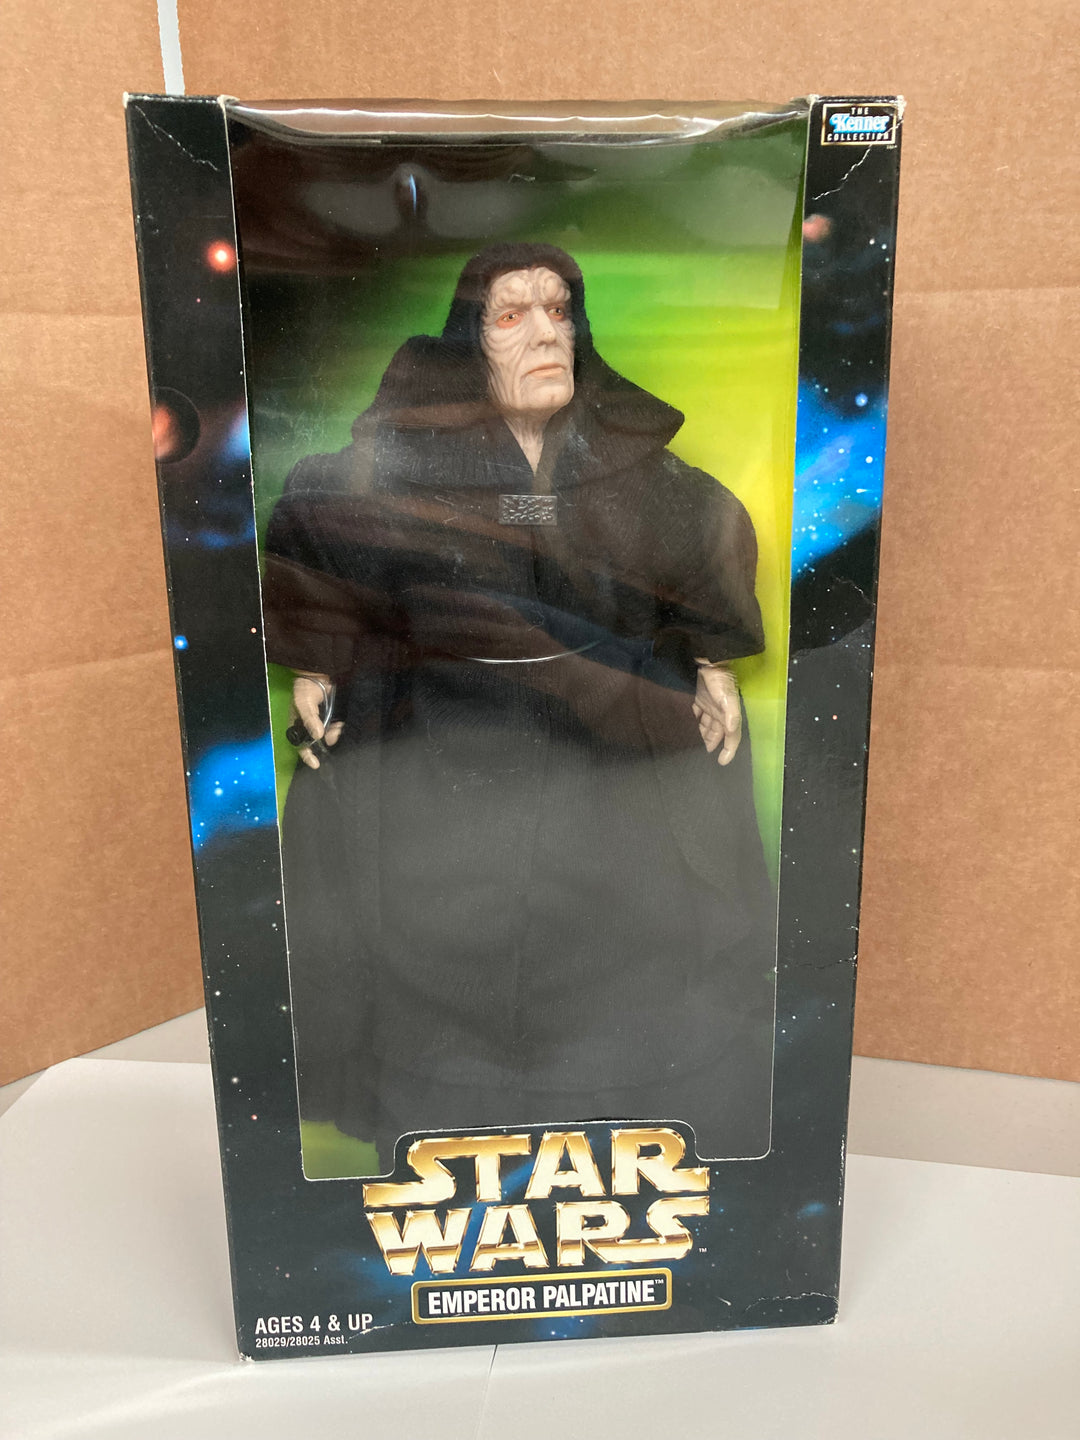 Star Wars Emperor Palpatine 12 inch figure Kenner 1998 MIB